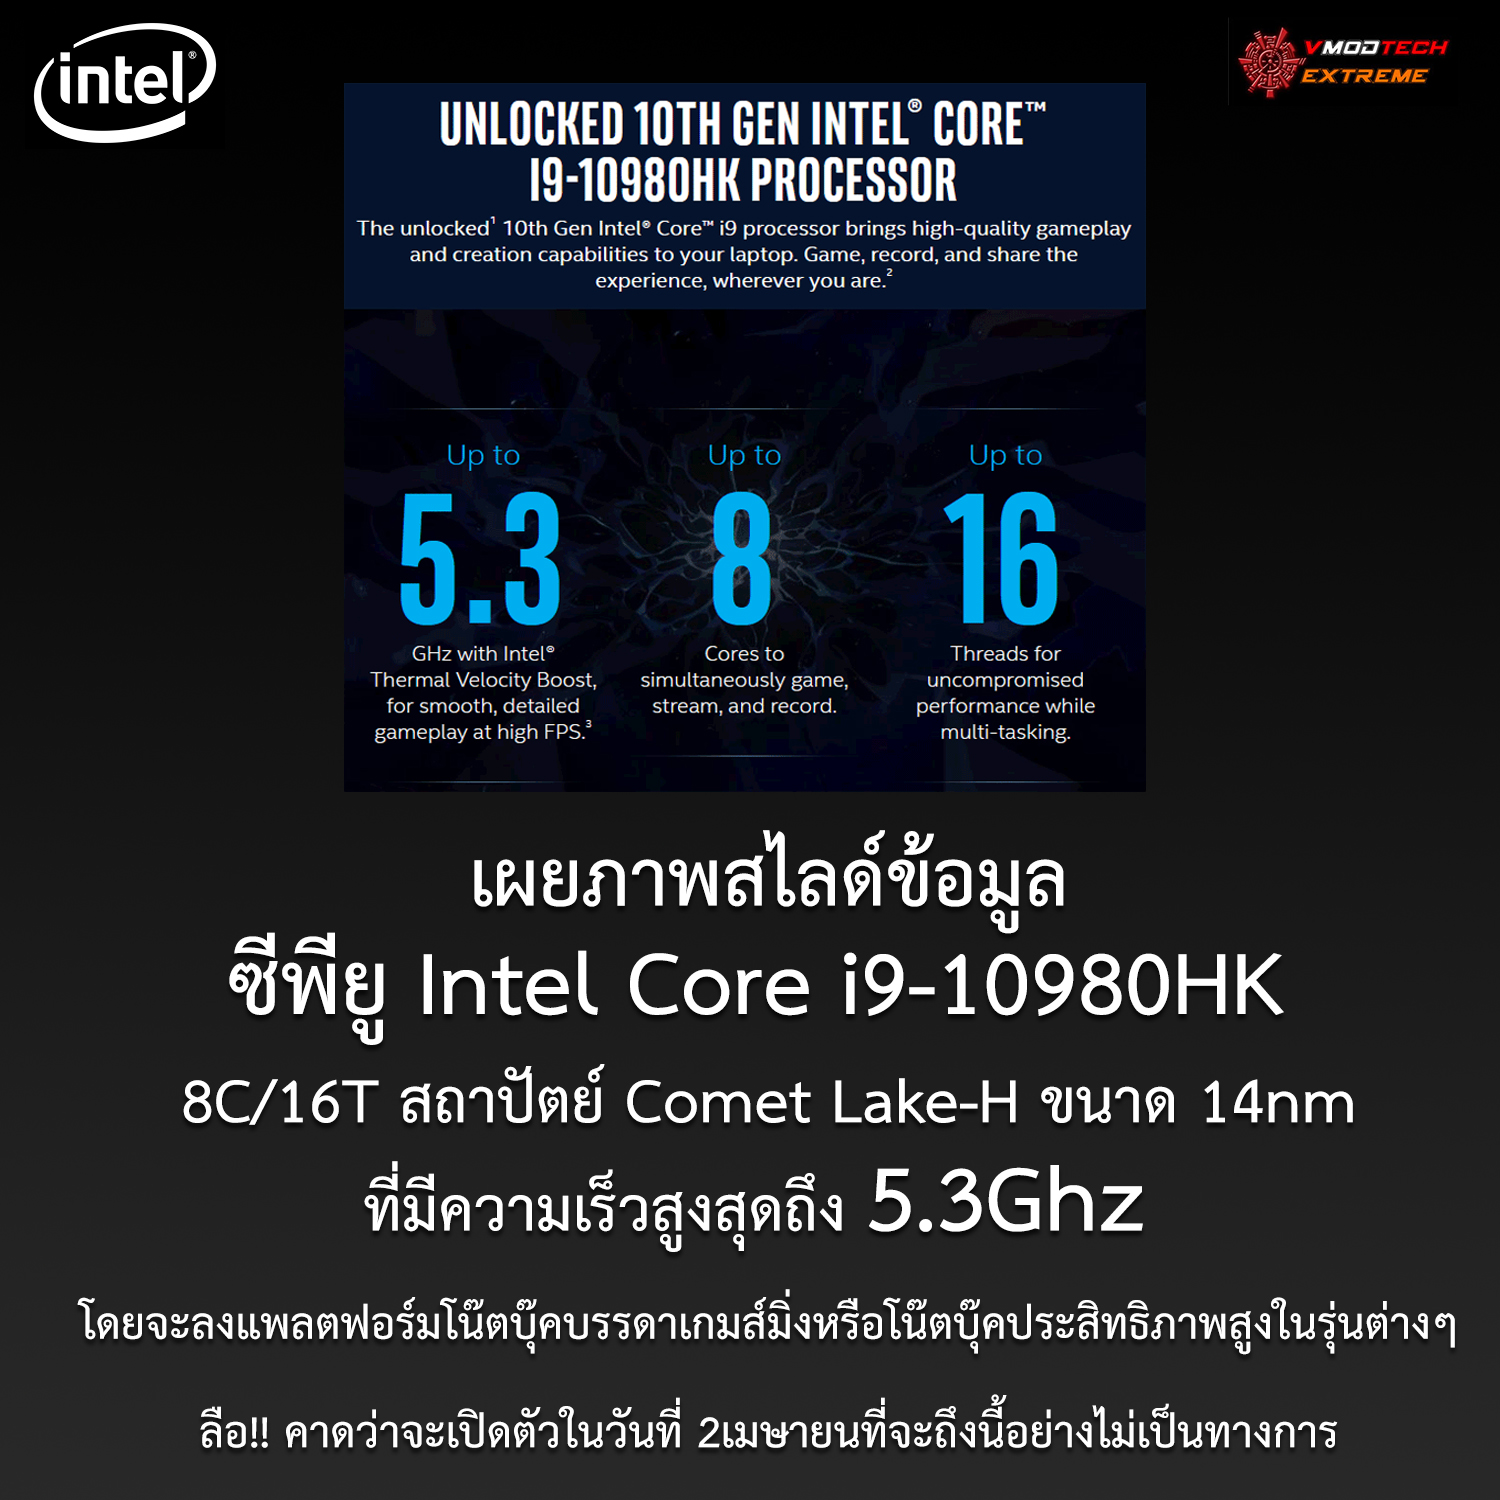 เผยภาพสไลด์ซีพียู Intel Core i9-10980HK ใช้งานในโน๊ตบุ๊คประสิทธิภาพสูงที่มีความเร็วสูงสุดถึง 5.3Ghz กันเลยทีเดียว 